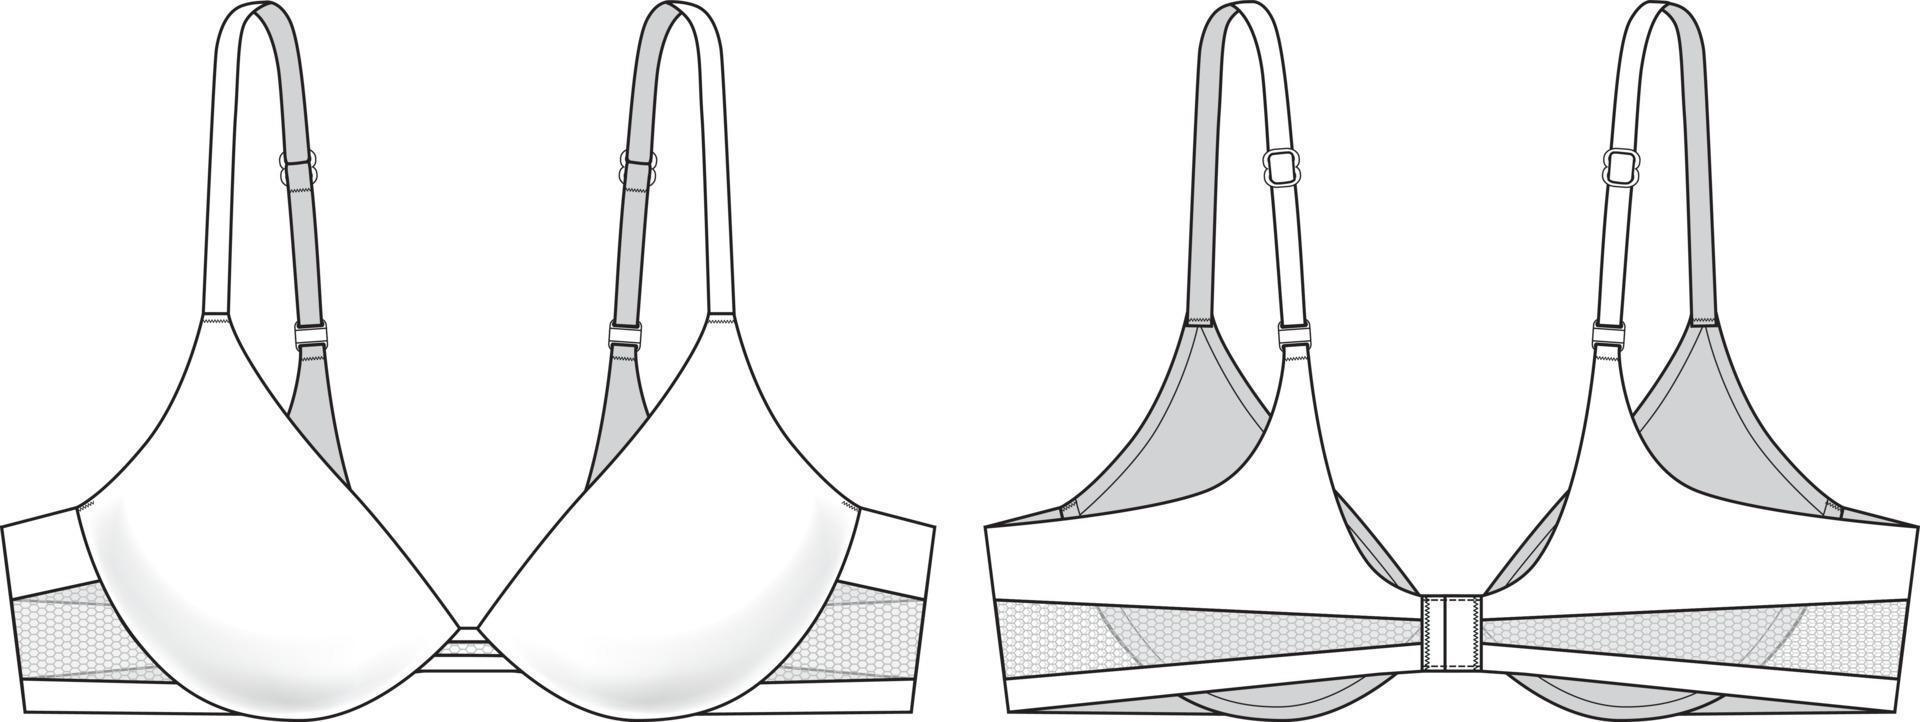 bindning ingen tråd bh teknisk illustration. redigerbara underkläder skiss vektor